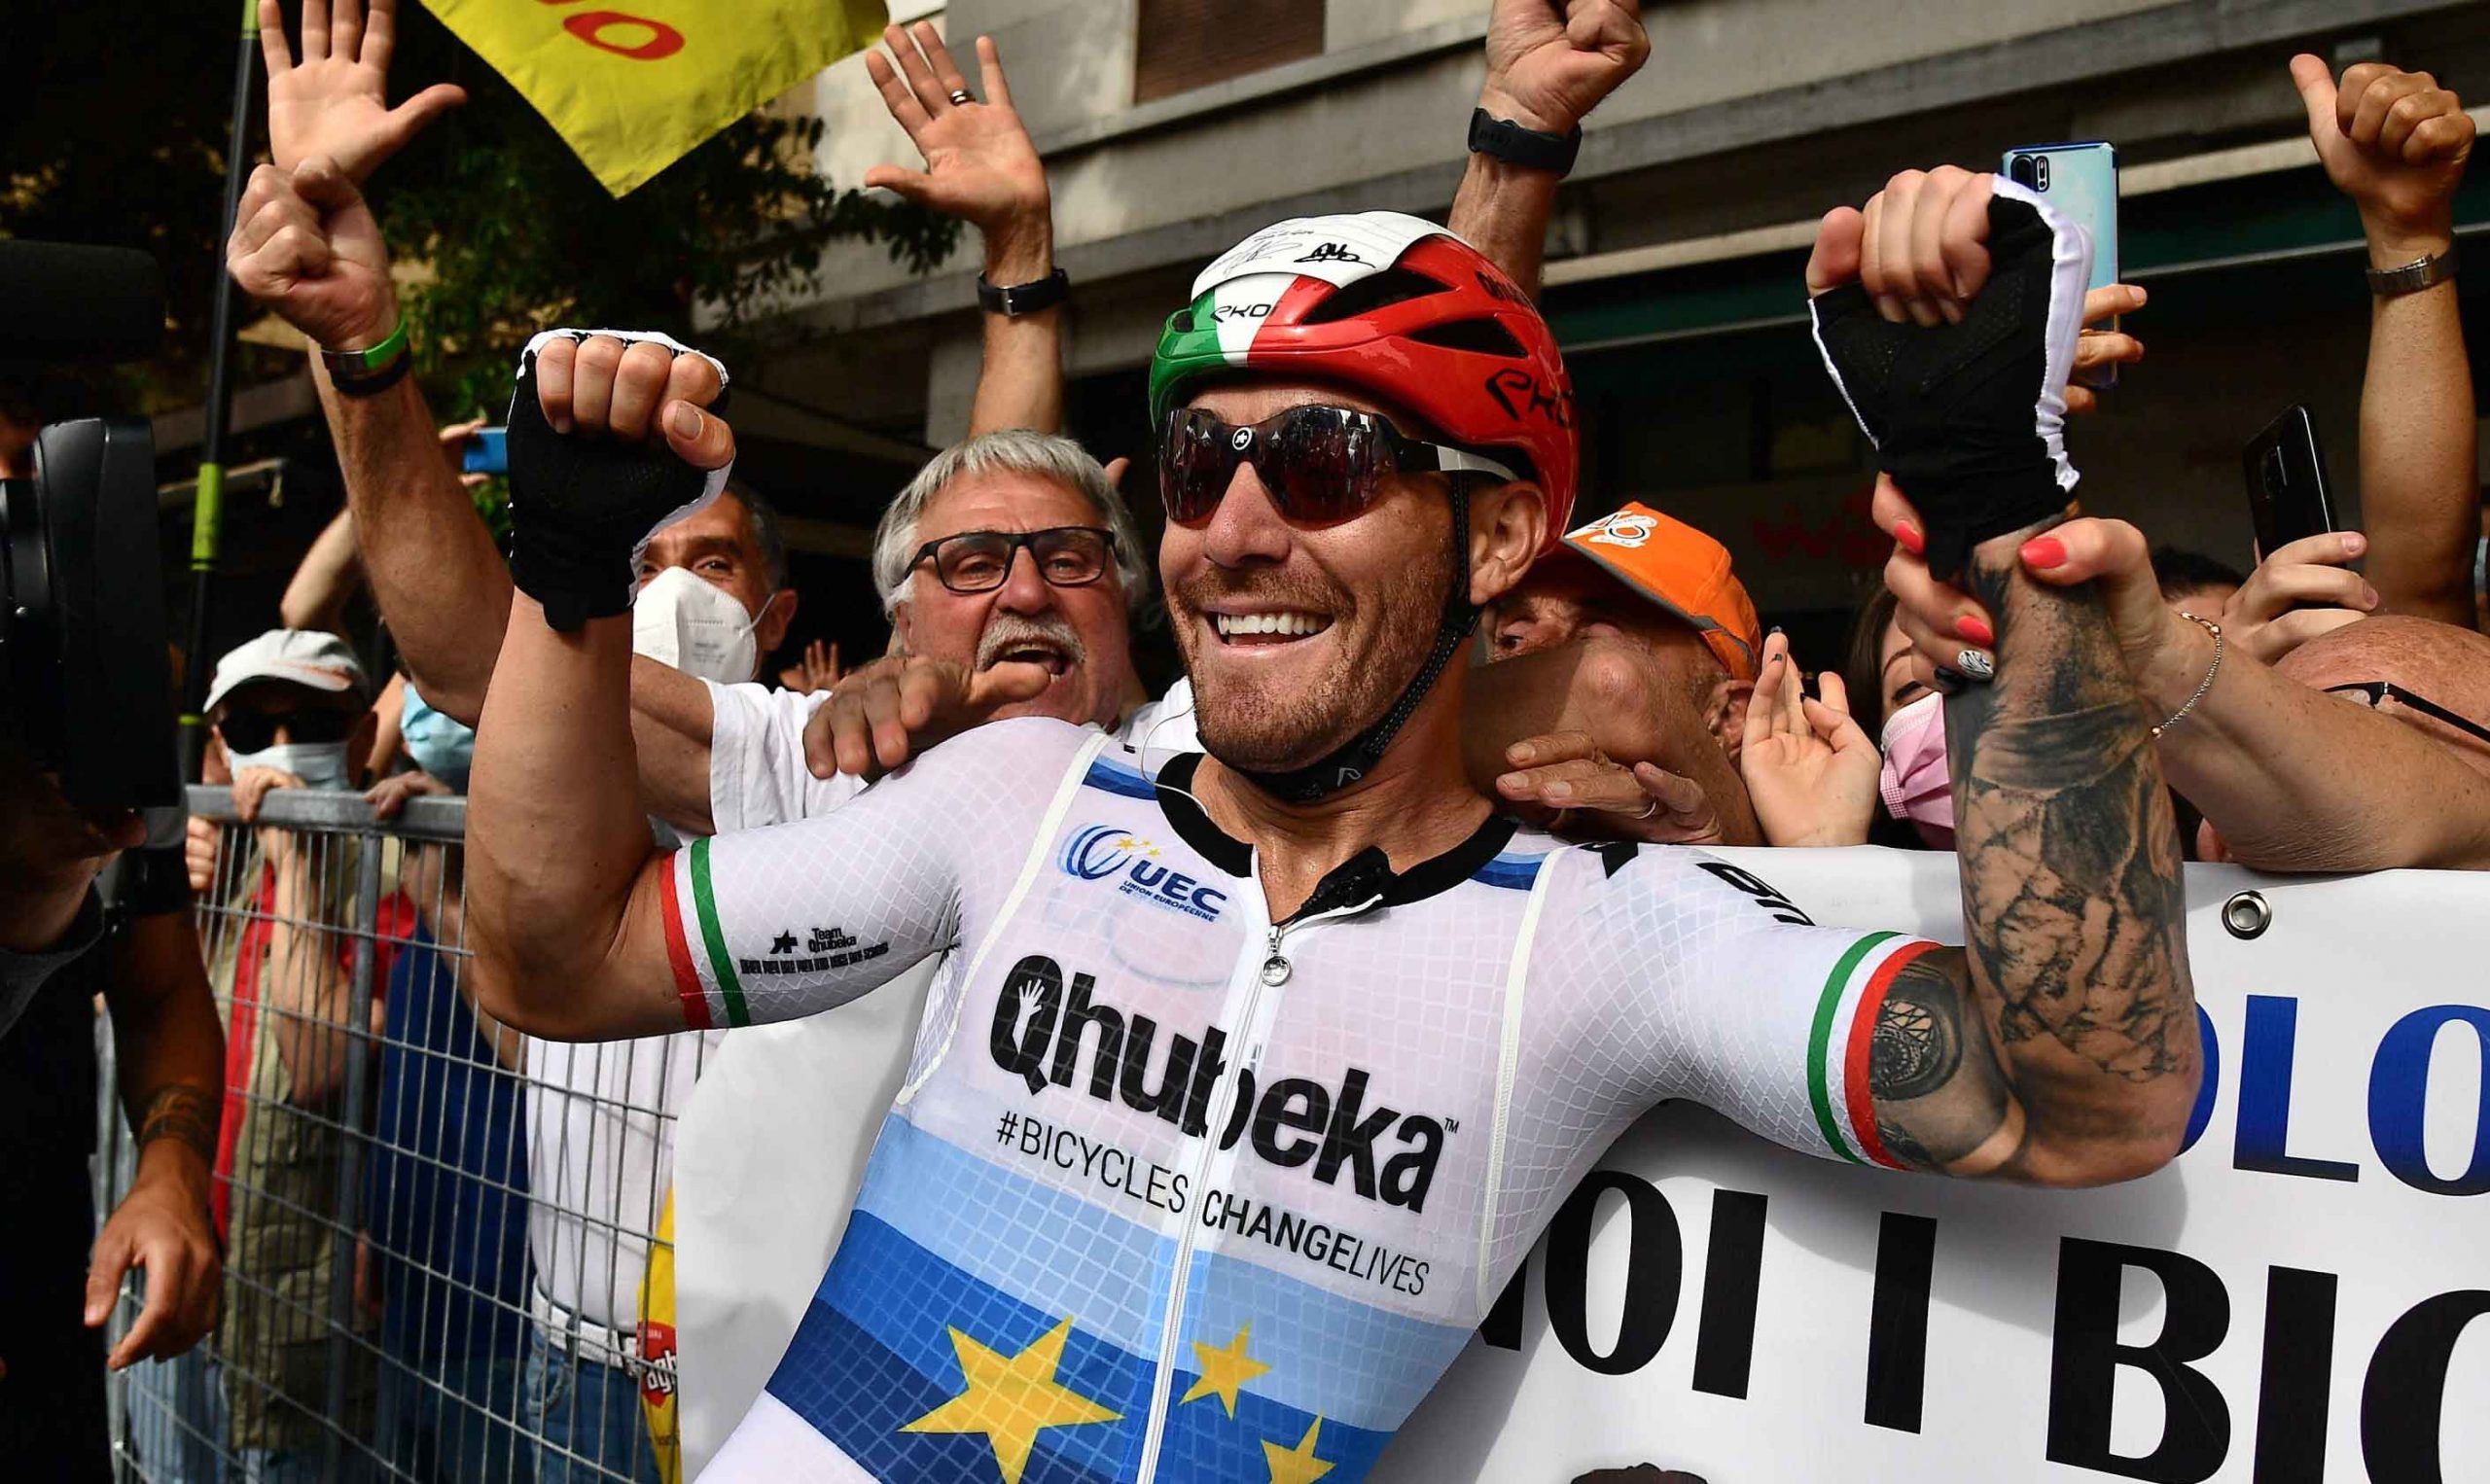 El piloto italiano Giacomo Nizzolo del Team Qhubeka Assos celebra tras ganar la 13a etapa de la carrera ciclista del Giro de Italia 2021 a lo largo de 198 km desde Ravenna a Verona, Italia, el 21 de mayo de 2021. (Ciclismo, Italia) EFE